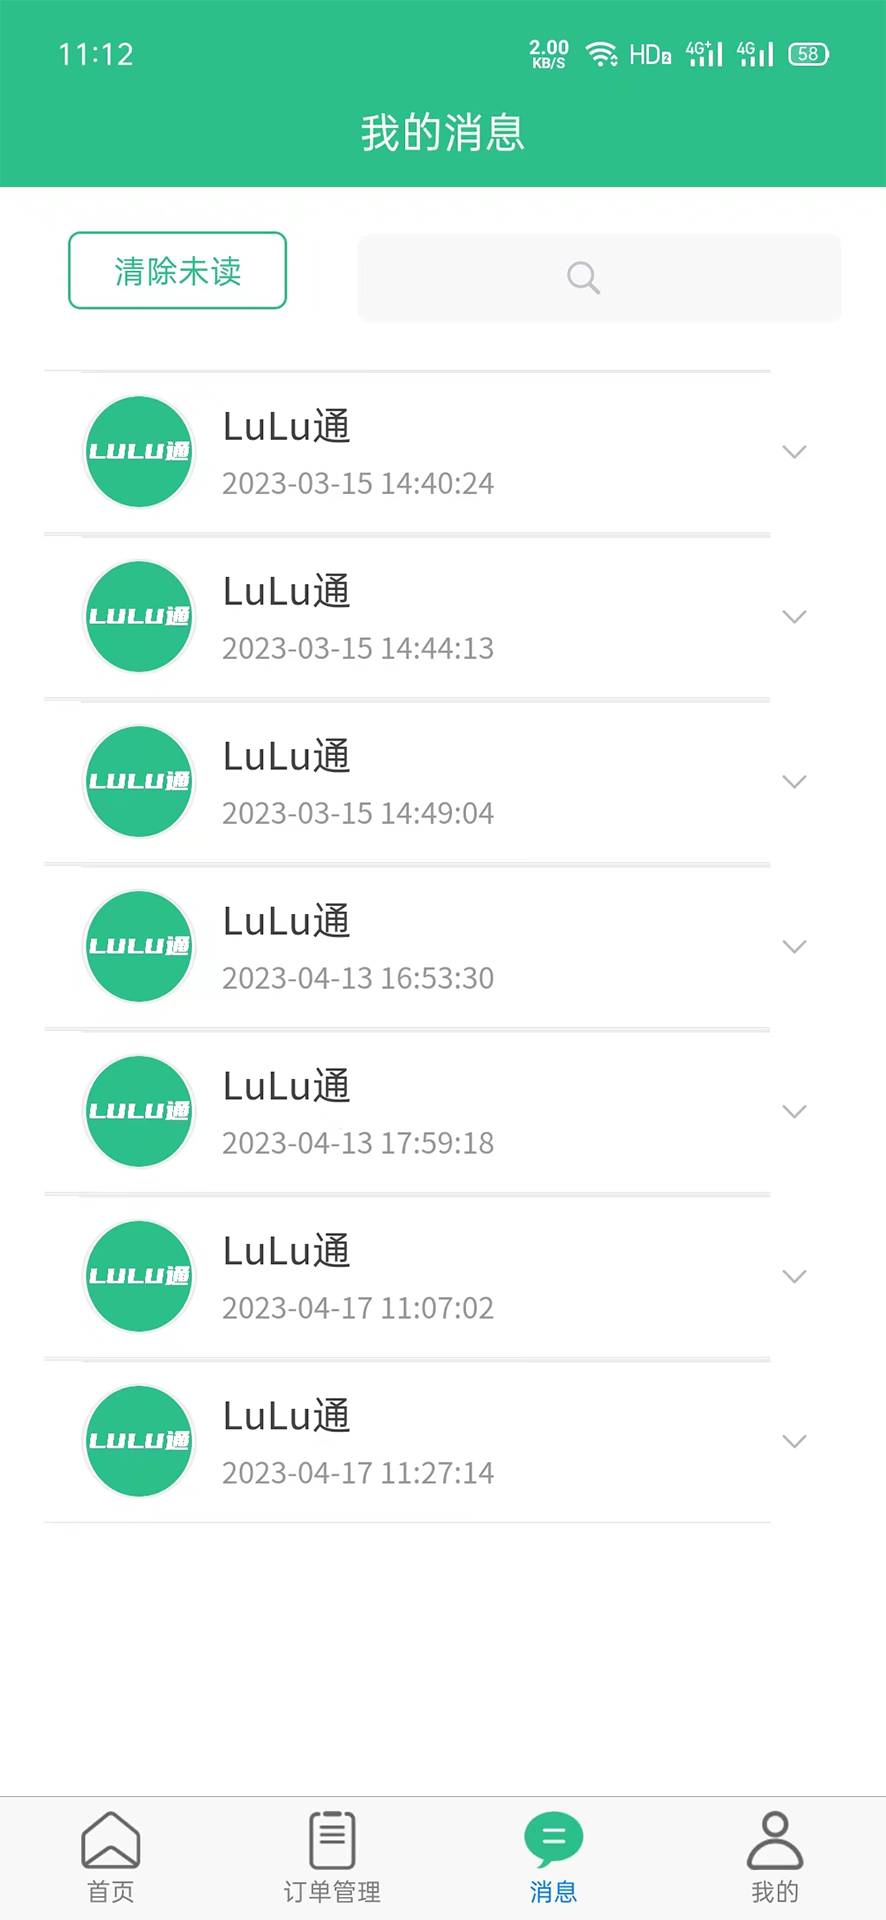 LuLu通司机版APP最新版图1: